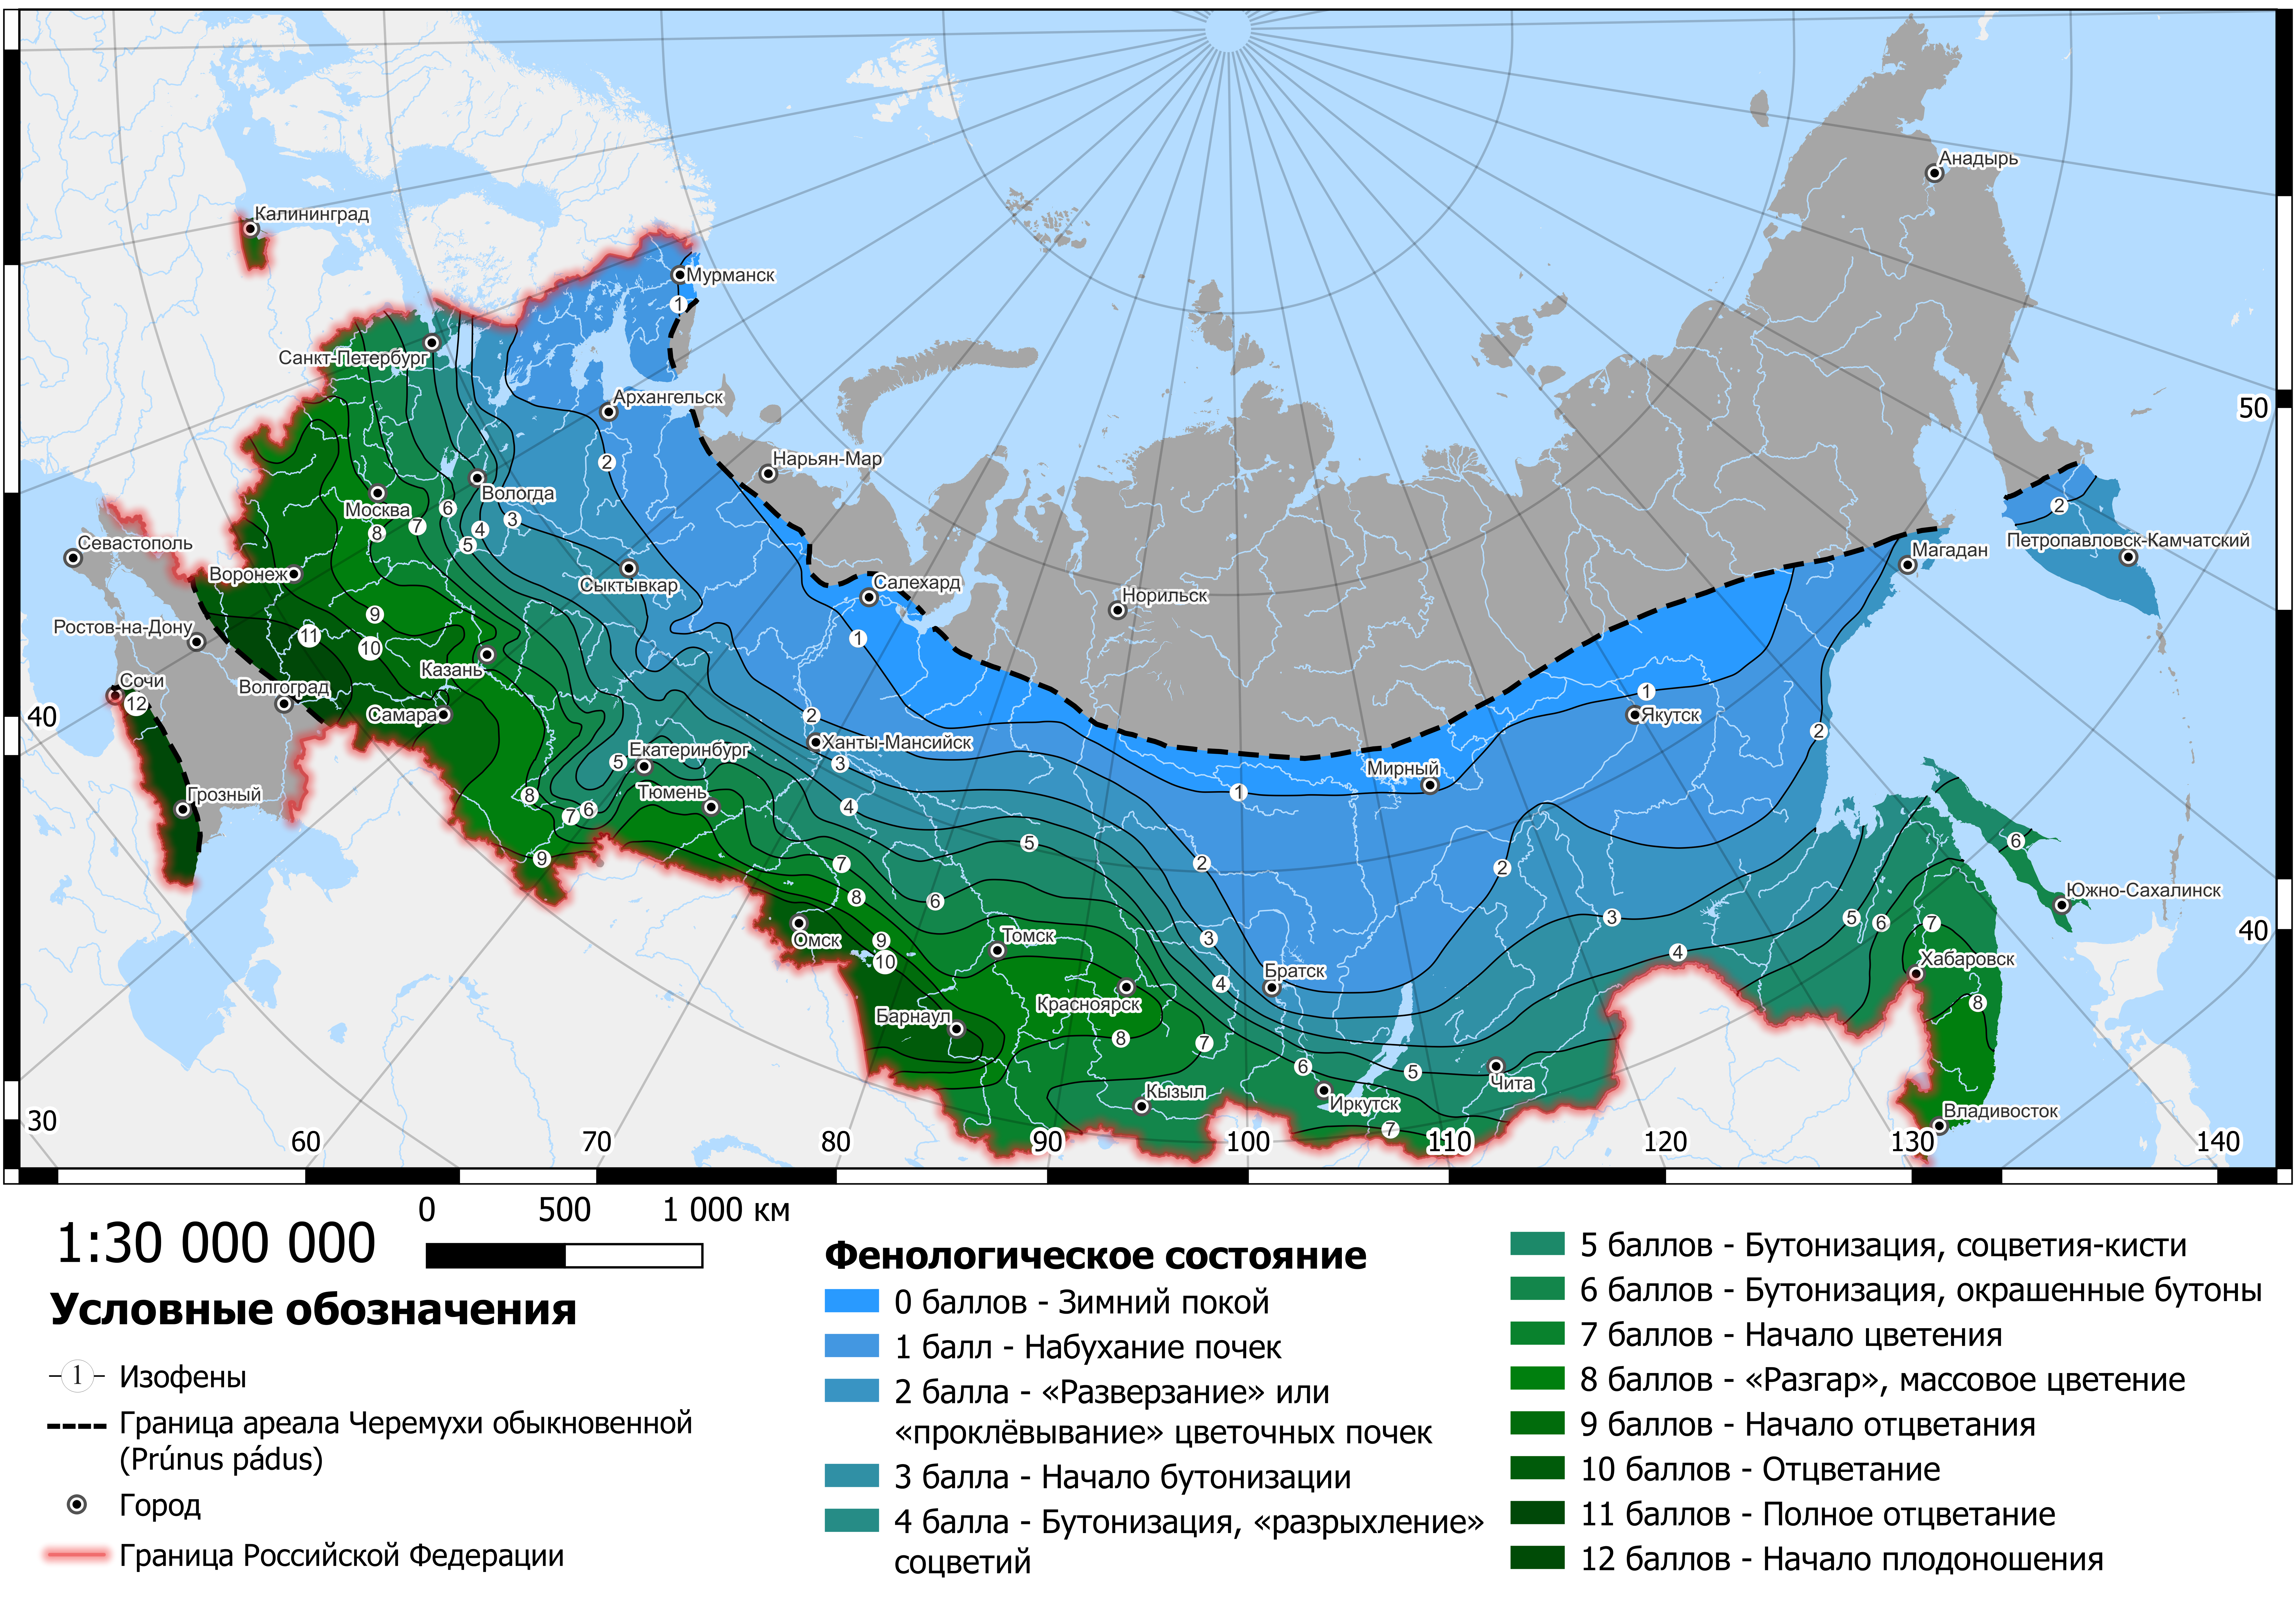 Весеннее развитие черемухи обыкновенной 15 мая на территории России